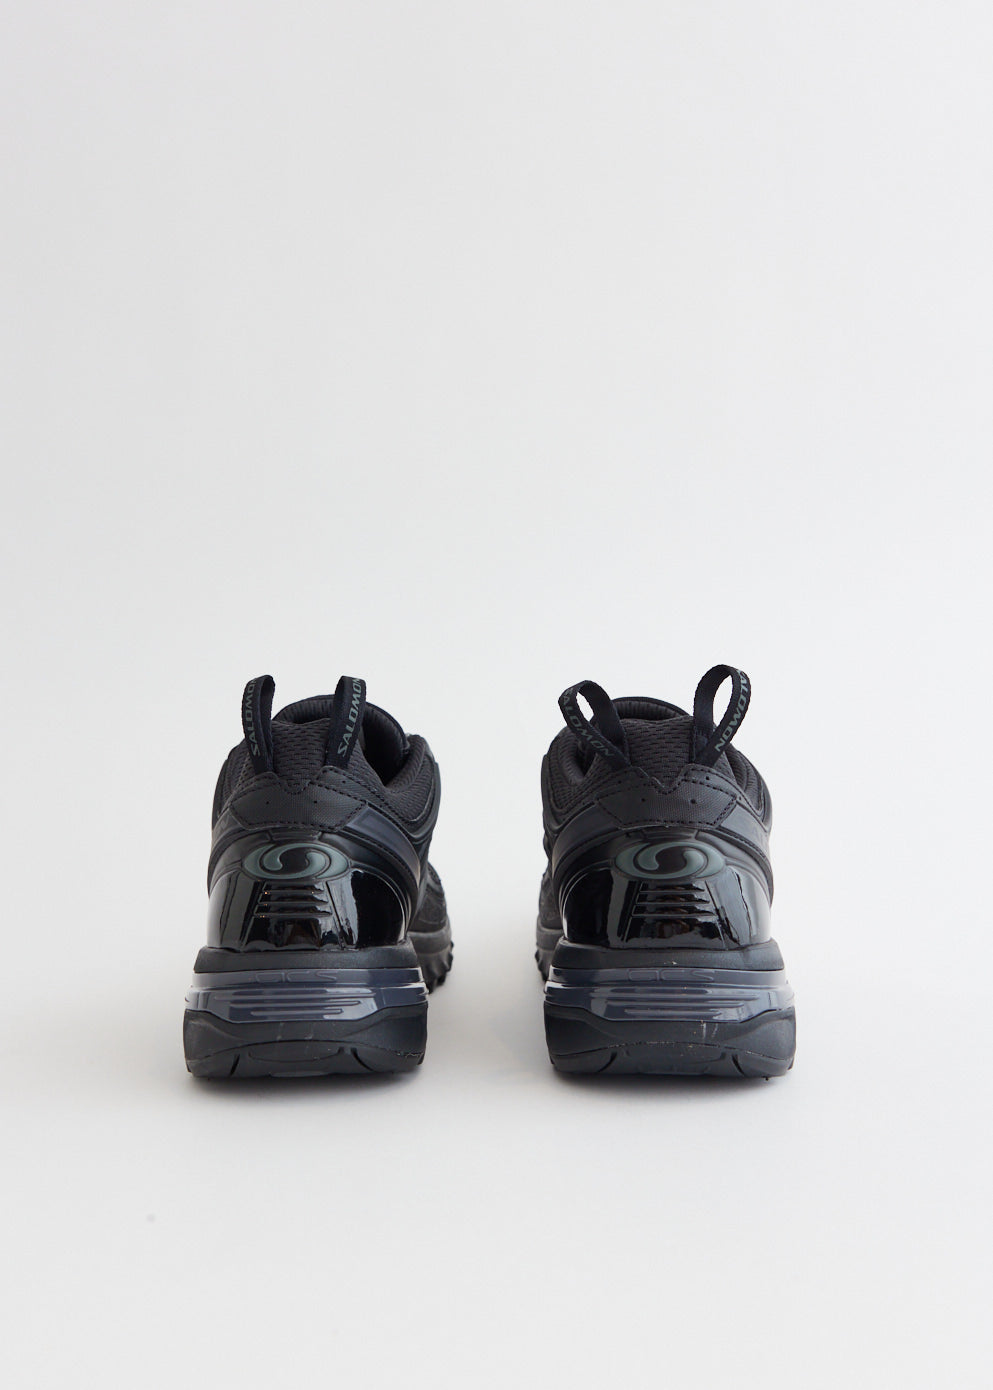 ACS PRO 'Black' Sneakers